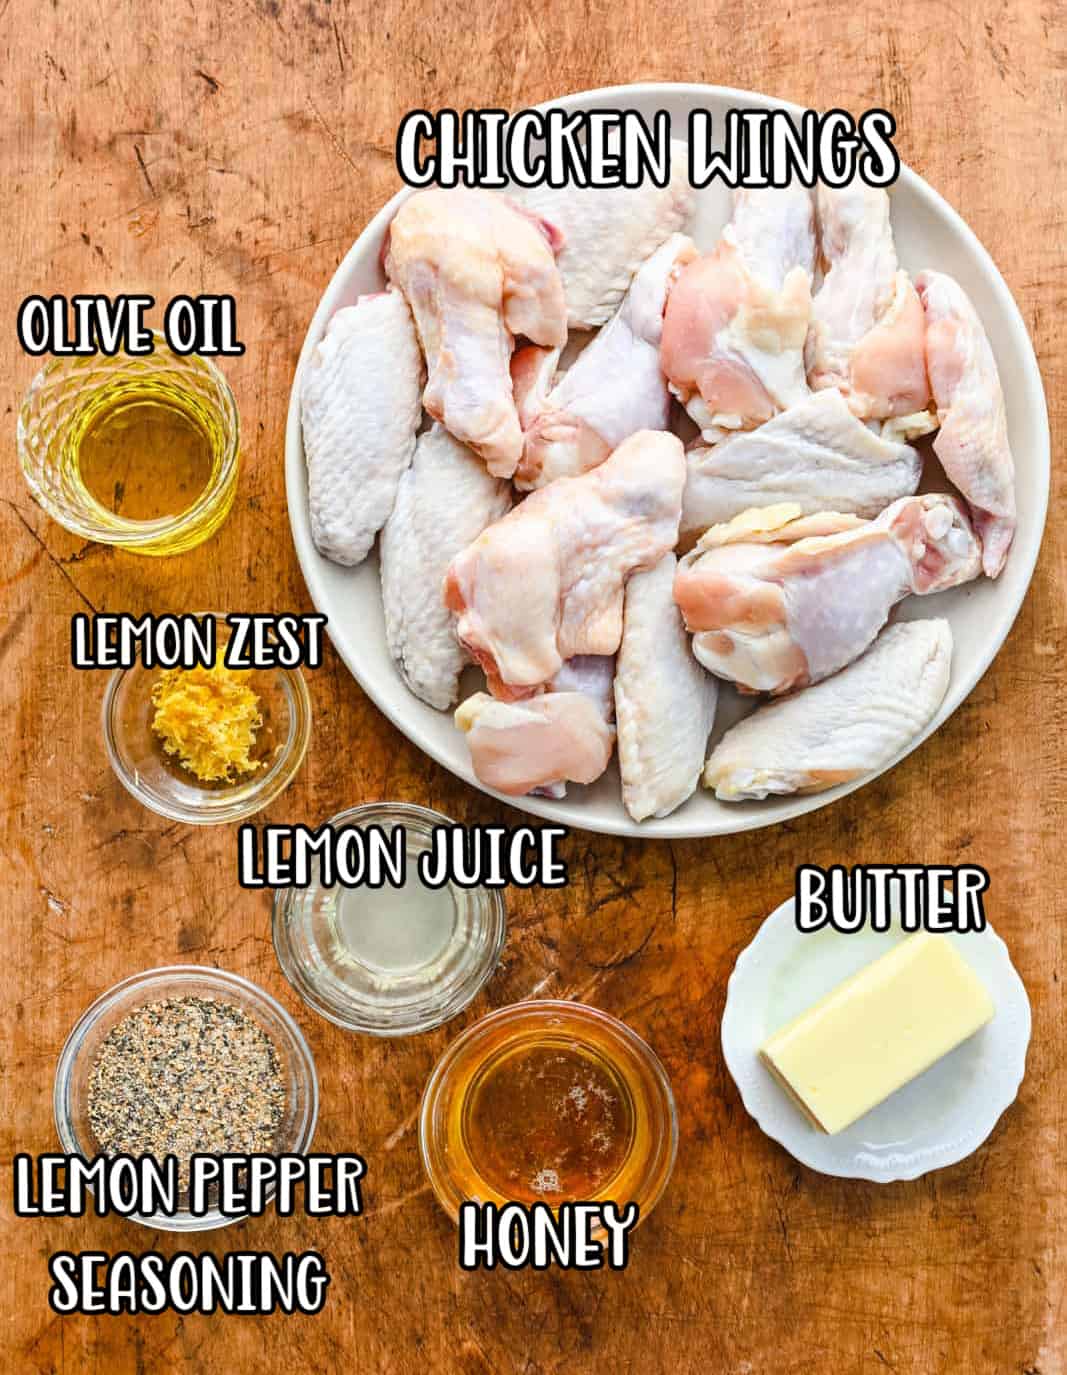 Chicken wings, lemon pepper seasoning, butter, olive oil, honey, lemon juice, and lemon zest.